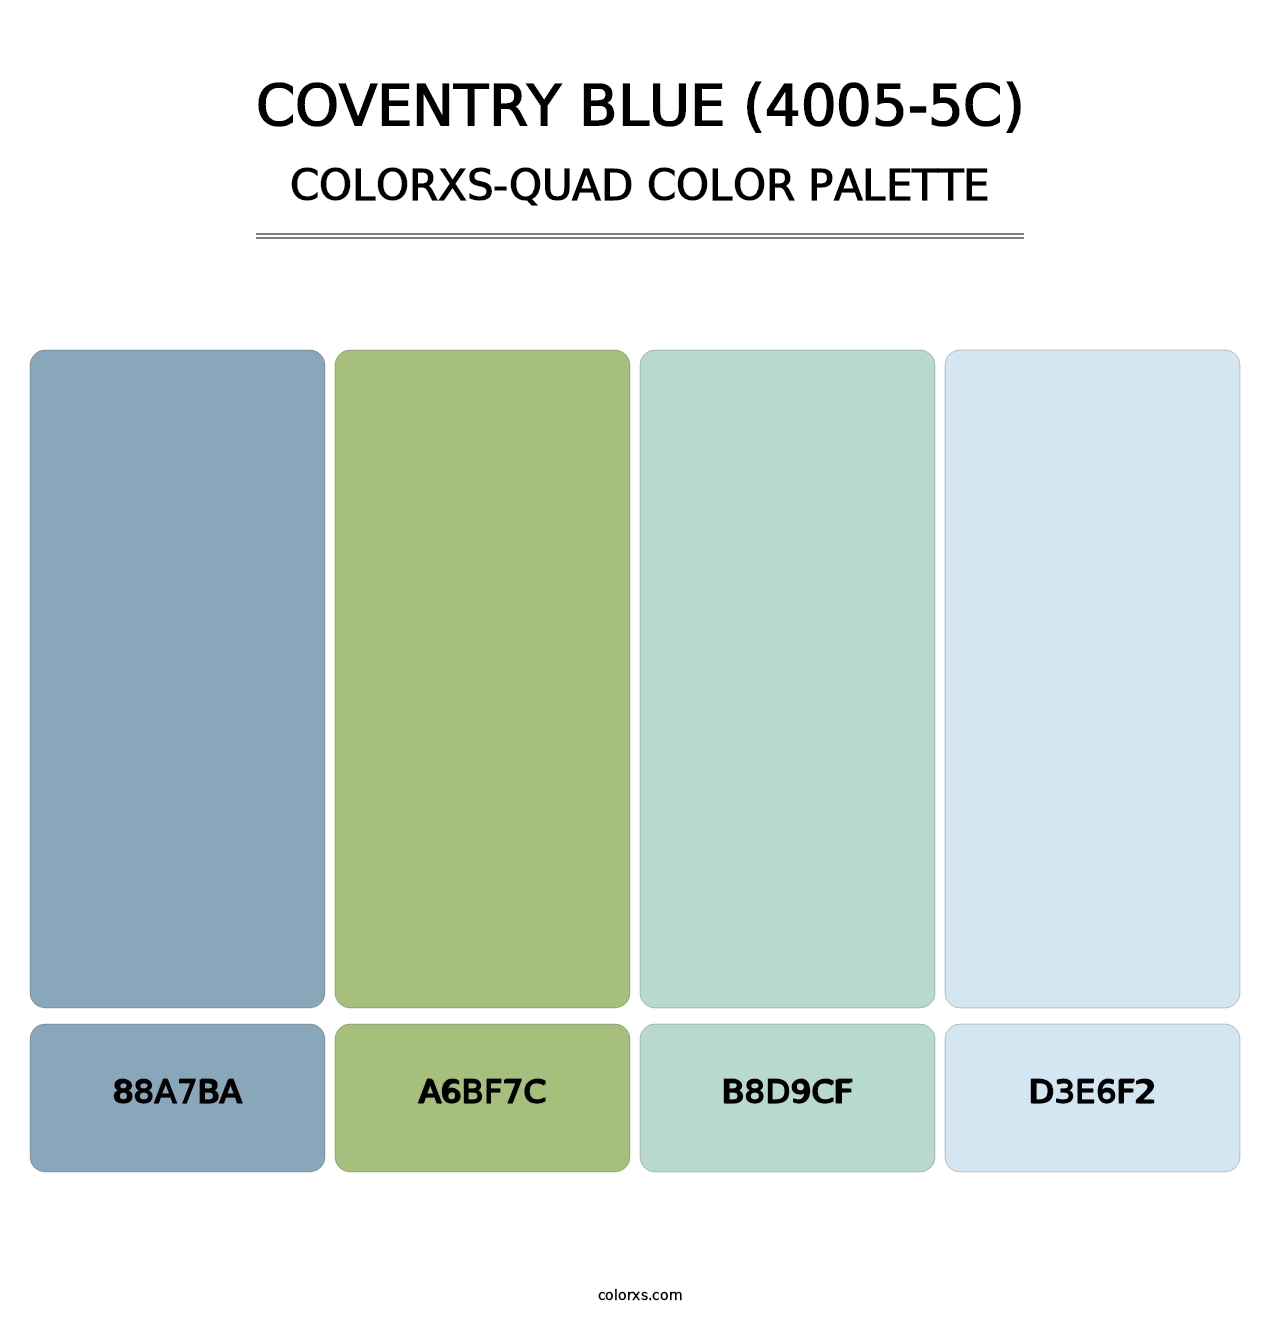 Coventry Blue (4005-5C) - Colorxs Quad Palette